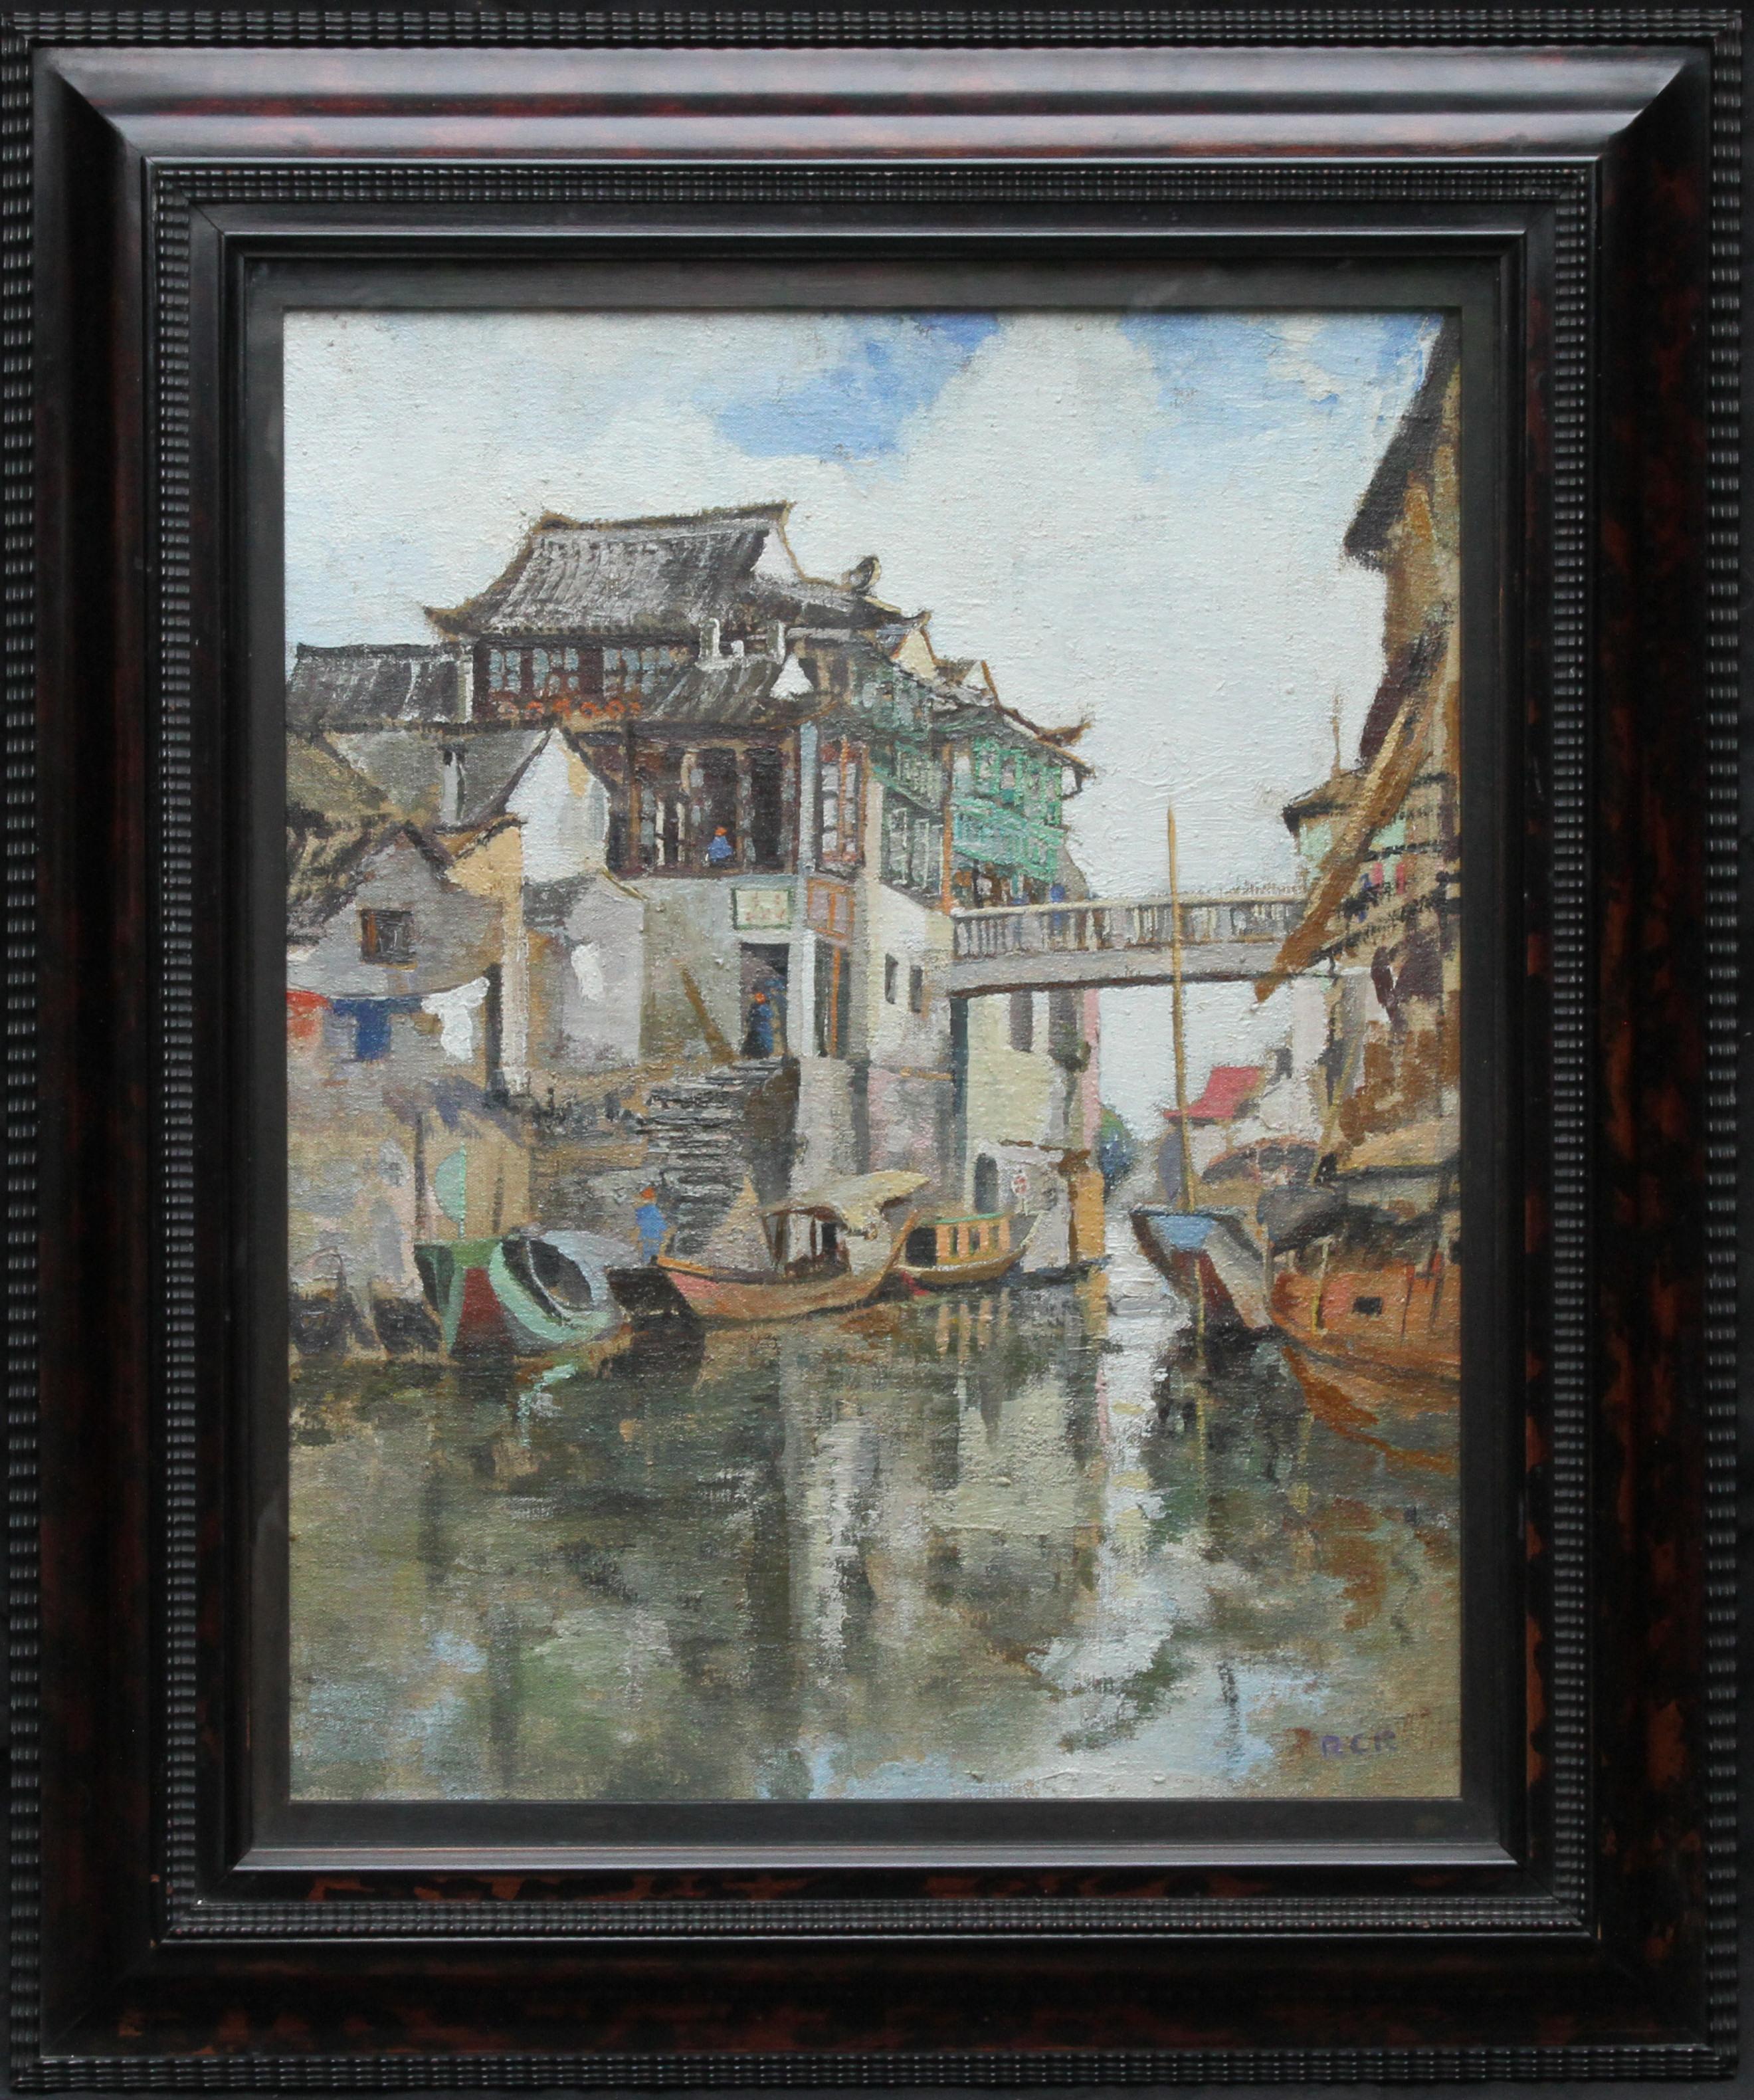 Landscape Painting Robert Cecil Robertson - Soochow/Suzchou Chine - Peinture à l'huile impressionniste écossaise des années 20 - Chine du canal